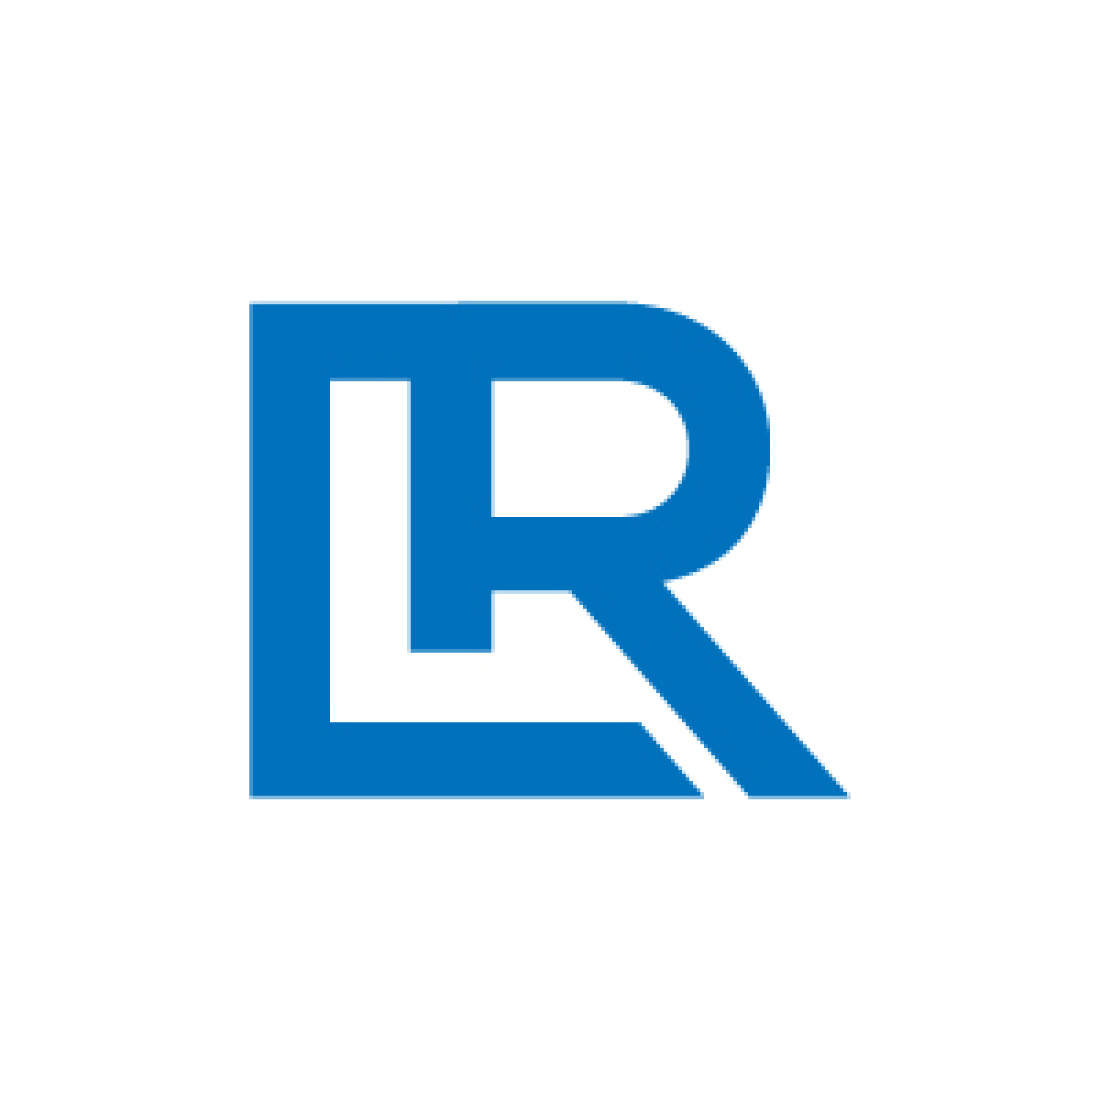 LR Lettering Logo Design main cover